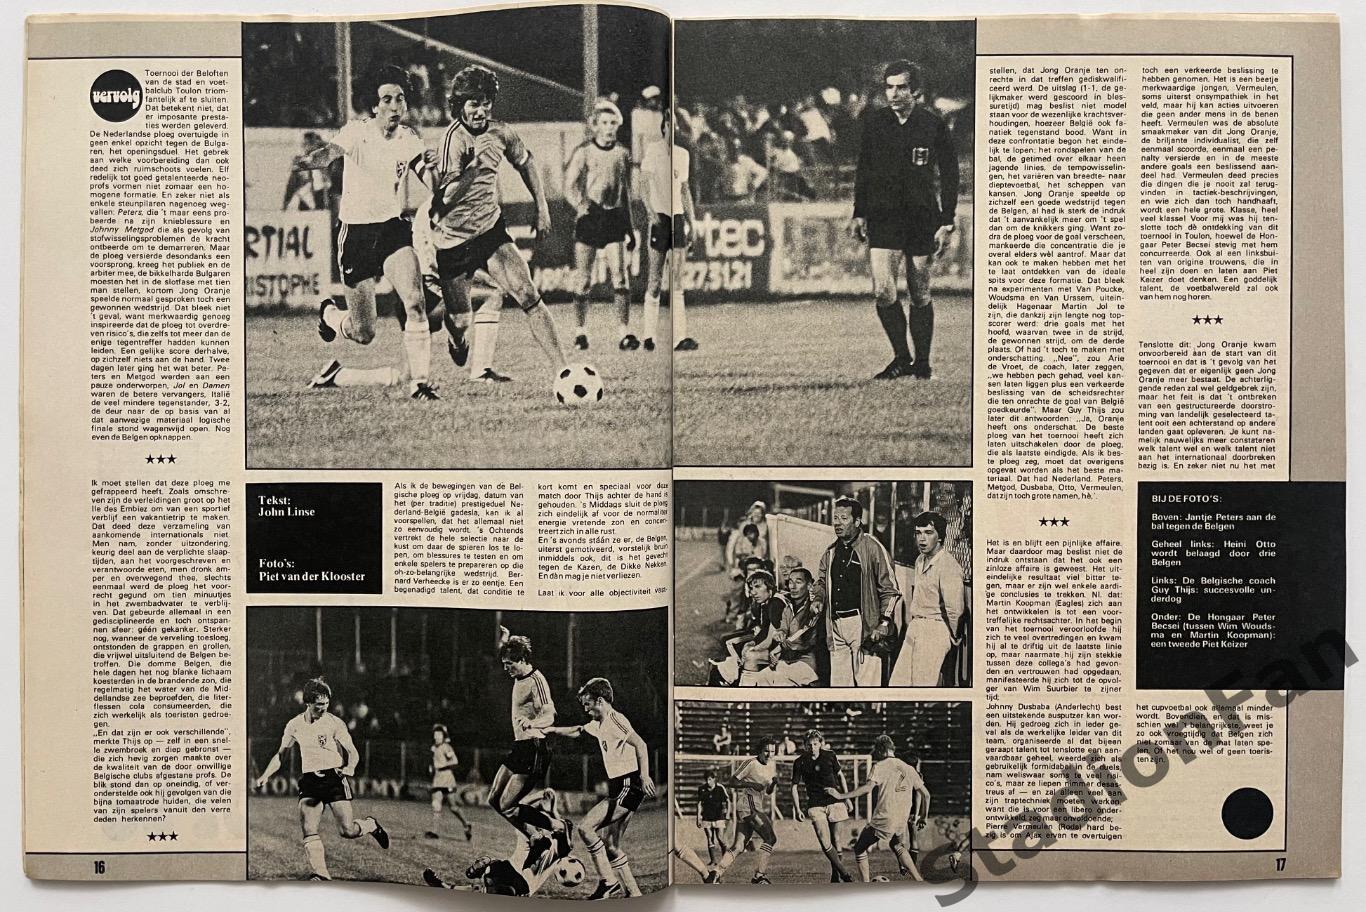 Журнал Voetbal nr.25 - 1977 год. 3